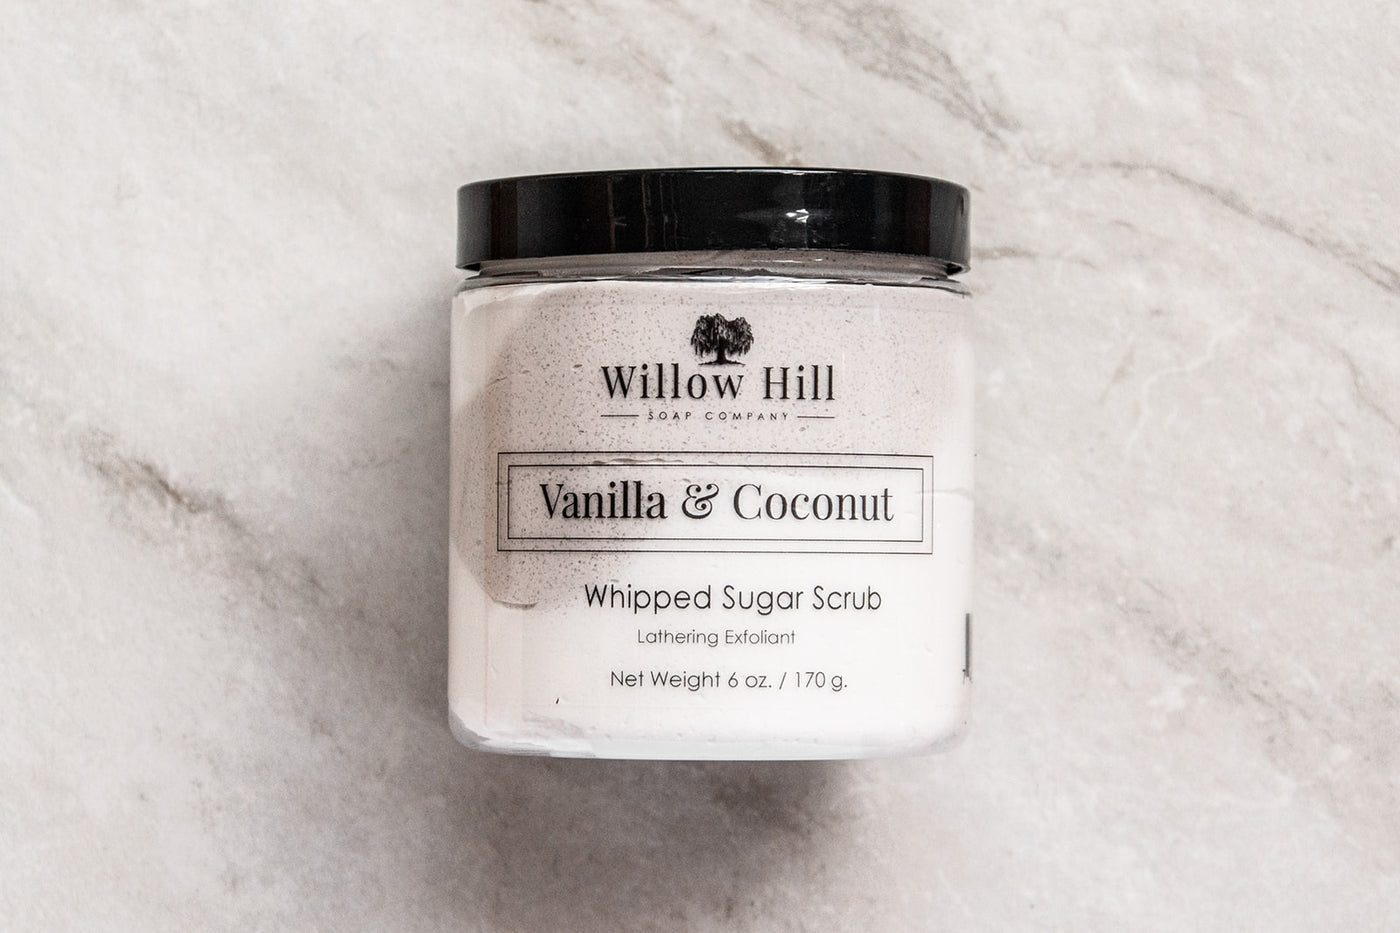 Vanilla & Coconut Whipped Sugar Scrub